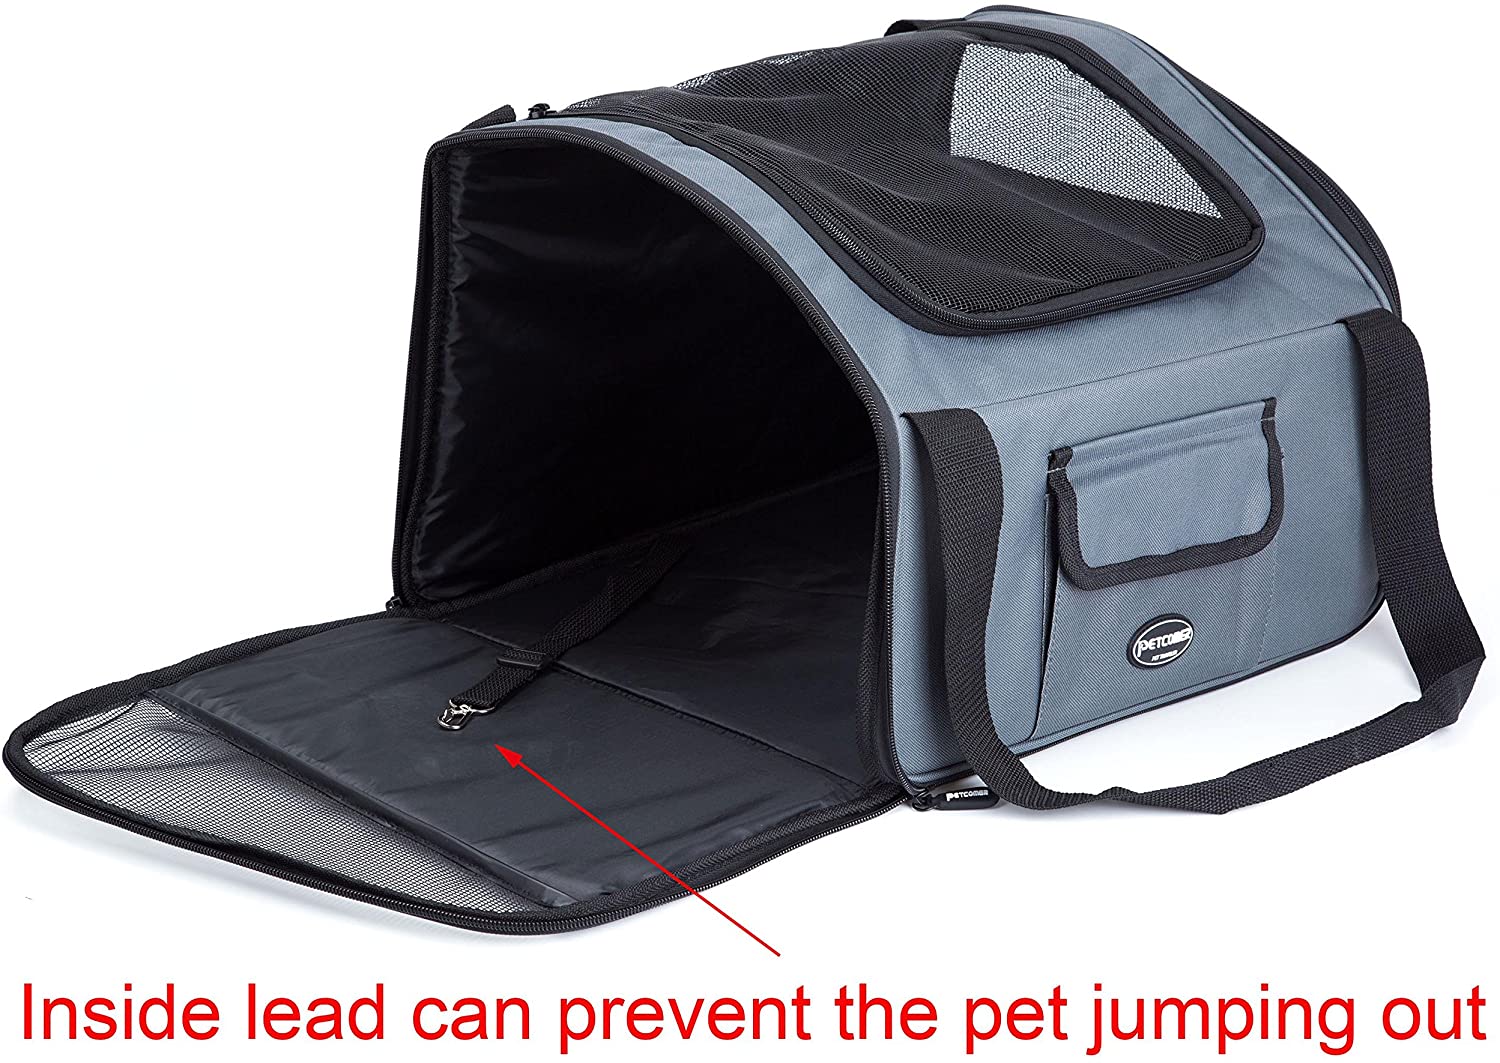  Plegable Portador de viaje del Asiento de coche para Mascotas Perros y Gatos, Gris Oscuro 